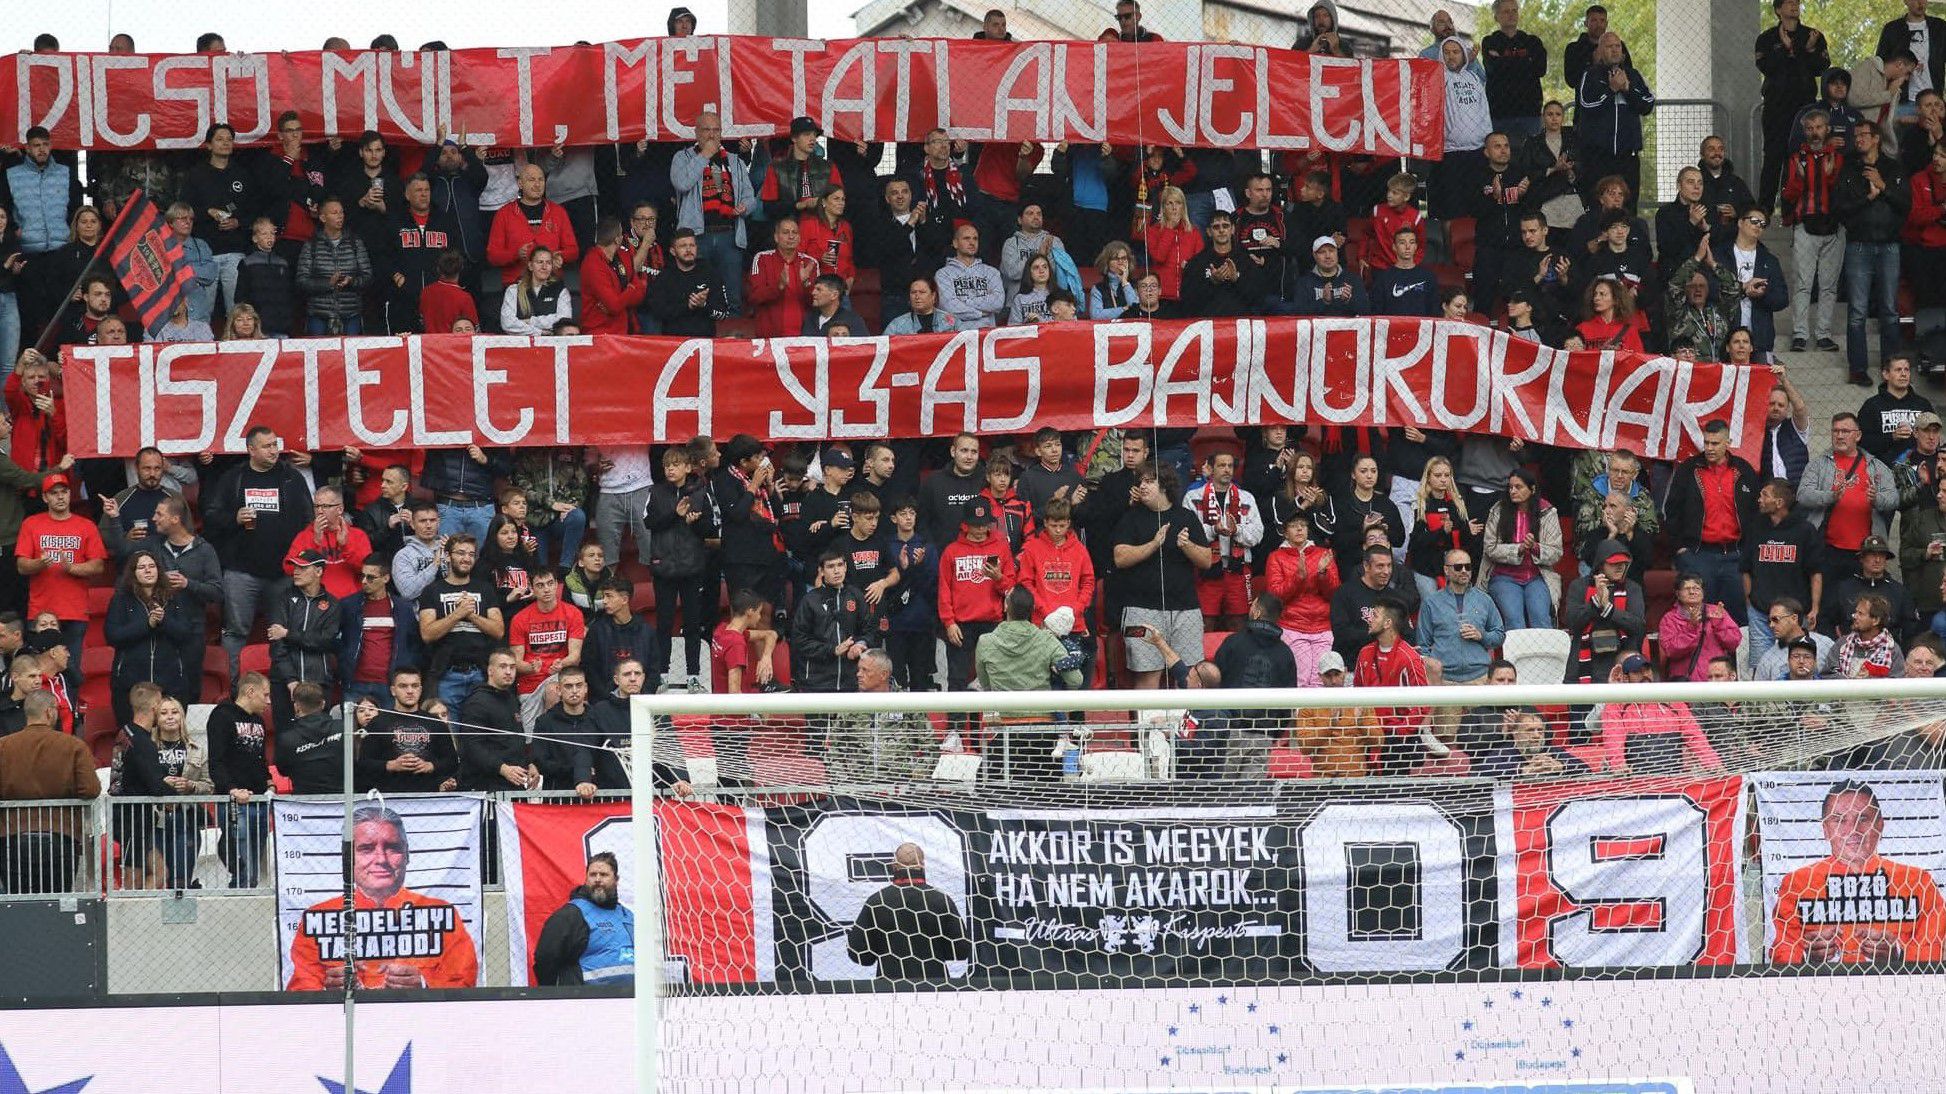 Piros alapra festett világos üzenet (Fotó: Kispest-Honvéd Football Club/Facebook)